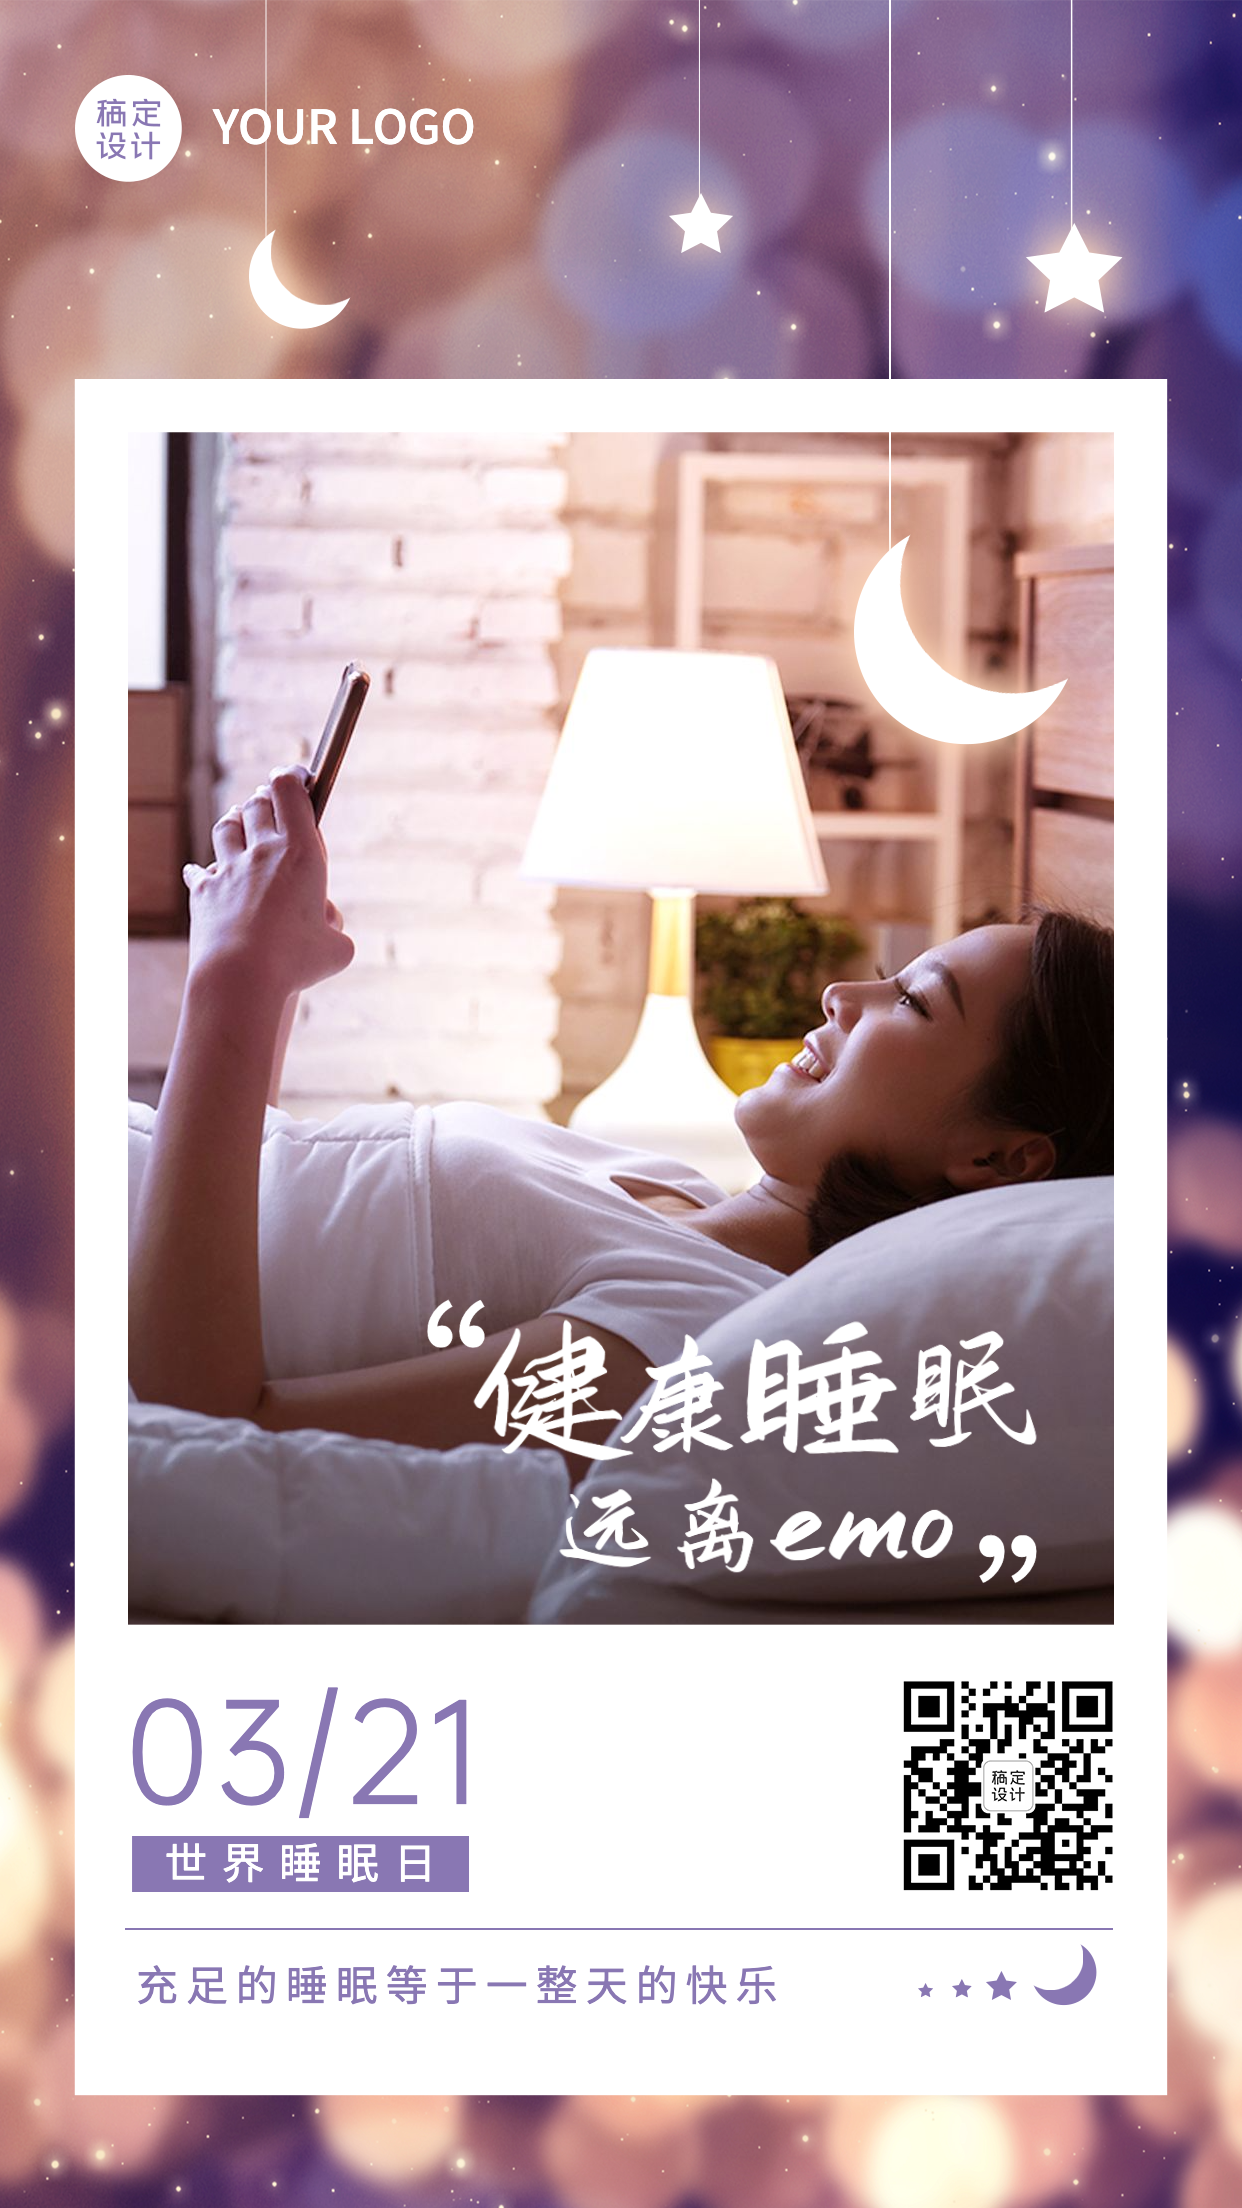 3.21世界睡眠日节日宣传手机海报